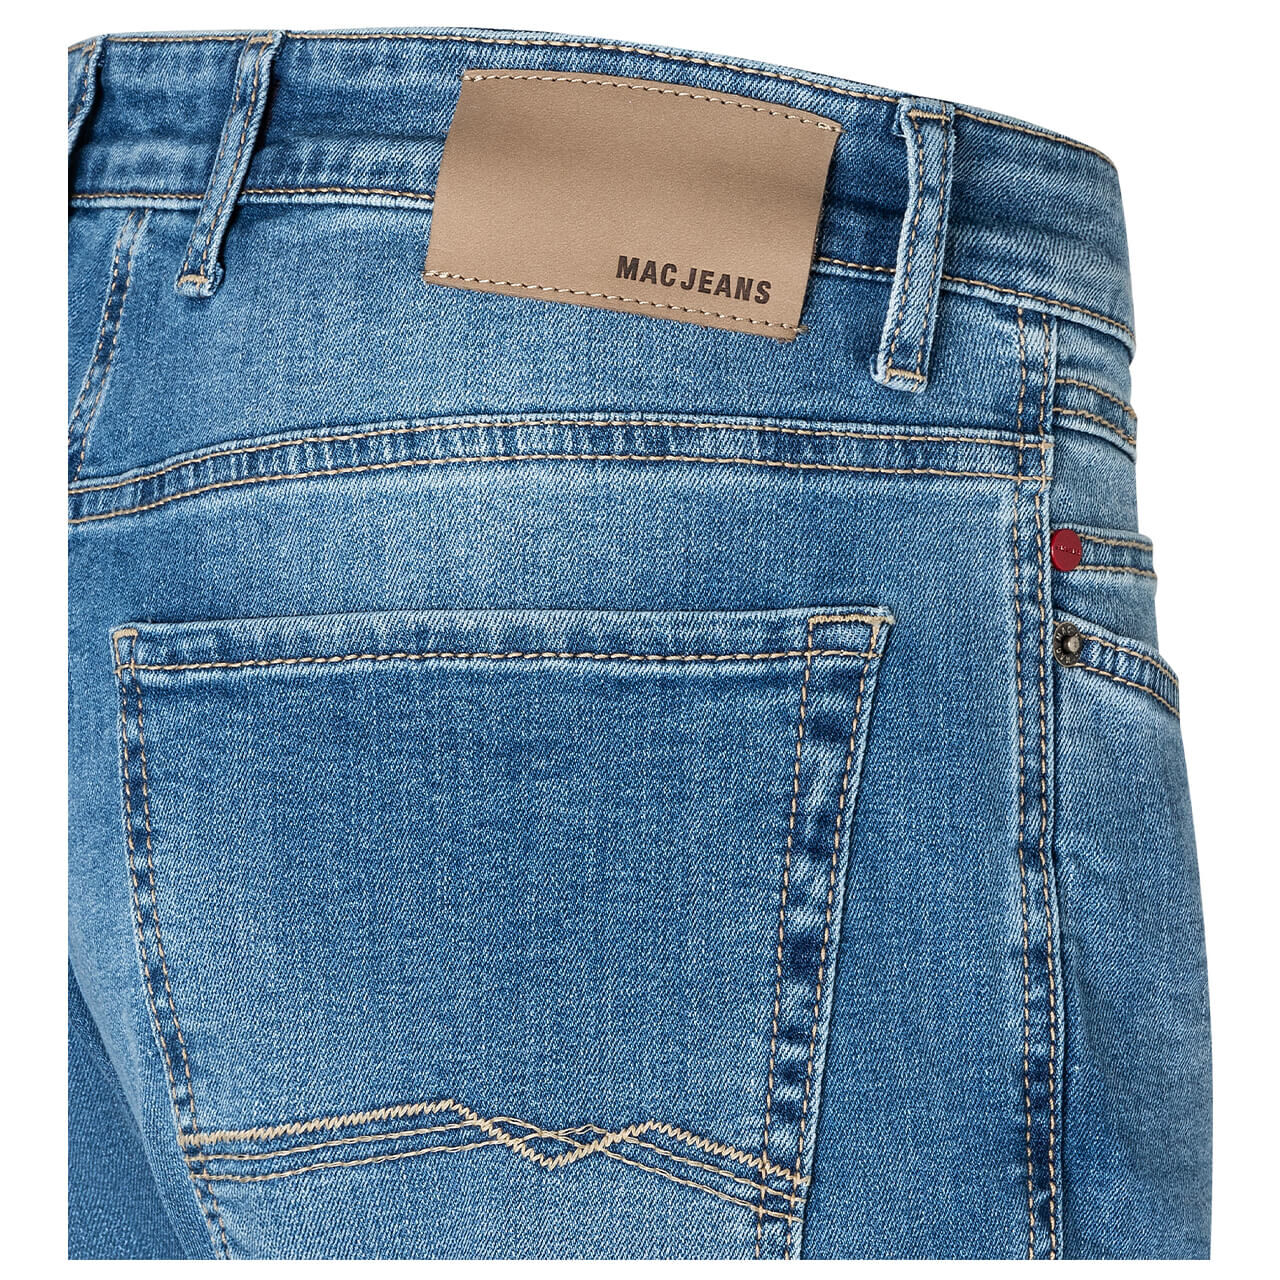 MAC Ben Jeans light authentic blue